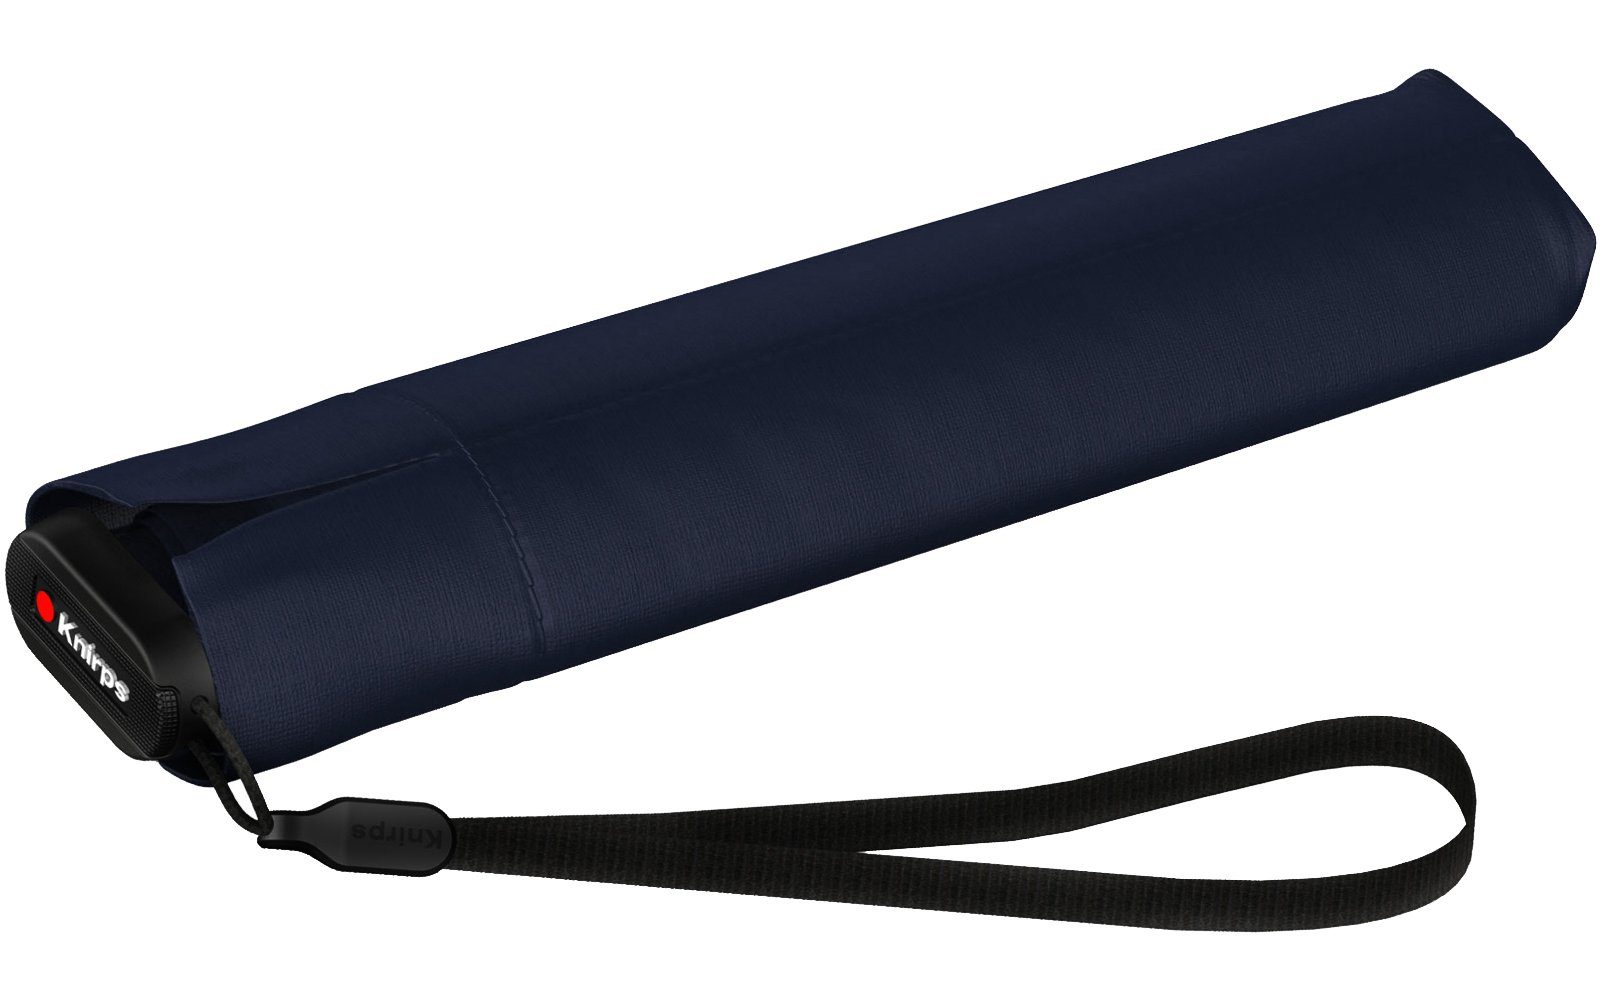 Taschenregenschirm stabilen extrem navy-blau super US.050 und Etui, Light leicht Ultra Knirps® Slim Manual kompakt im